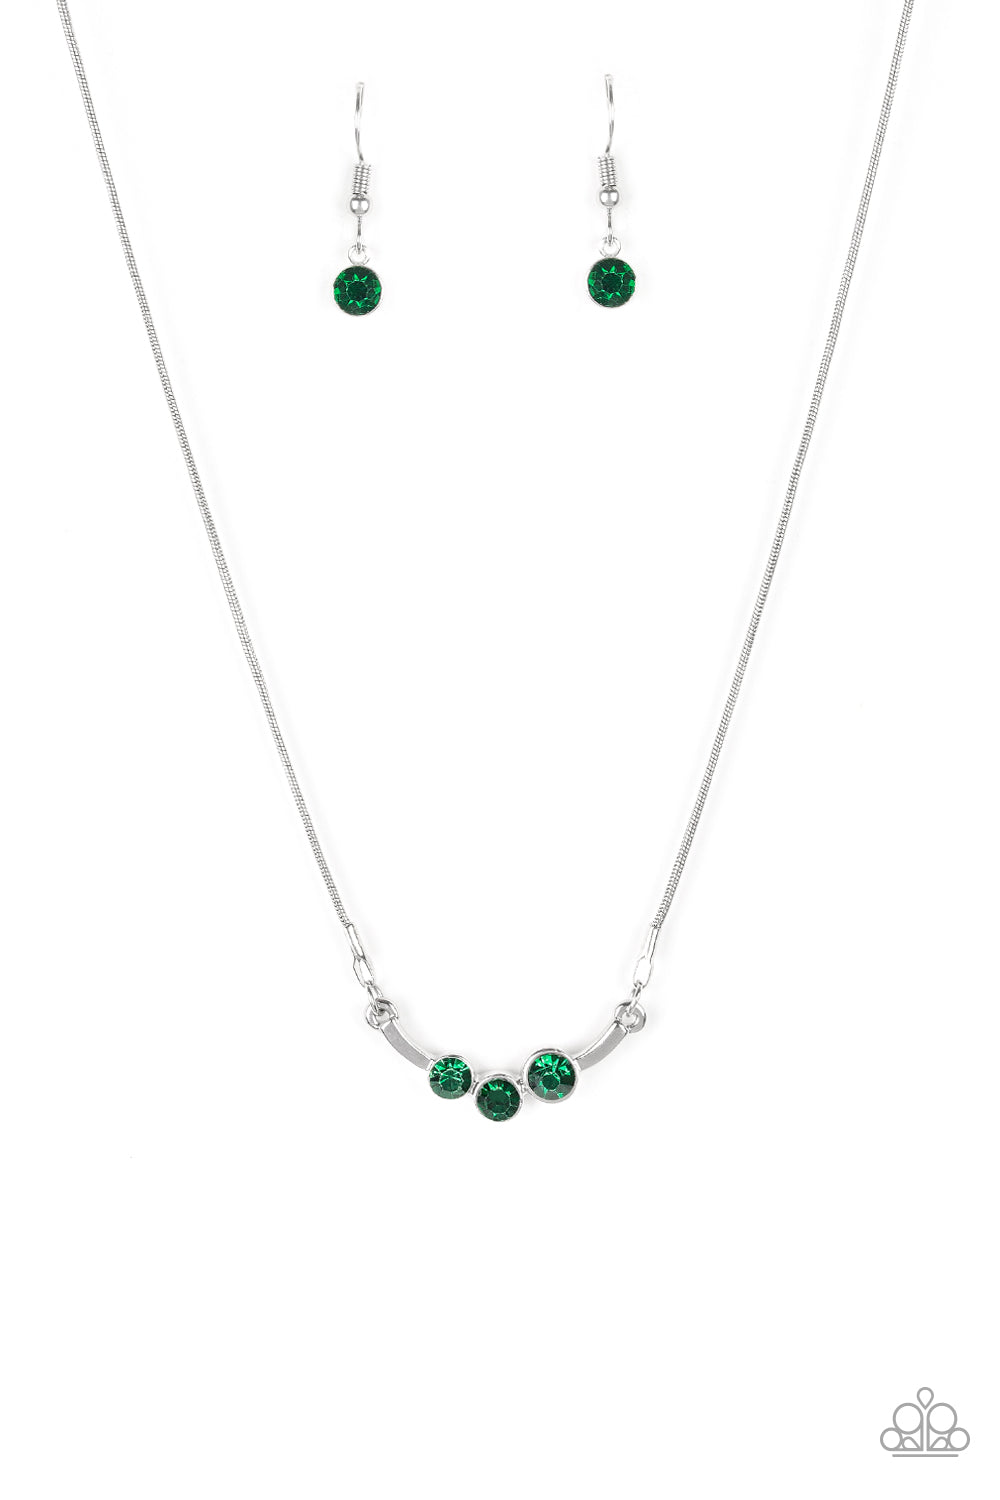 Sparkling Stargazer - Green Rhinestone Necklace - Paparazzi Accessories